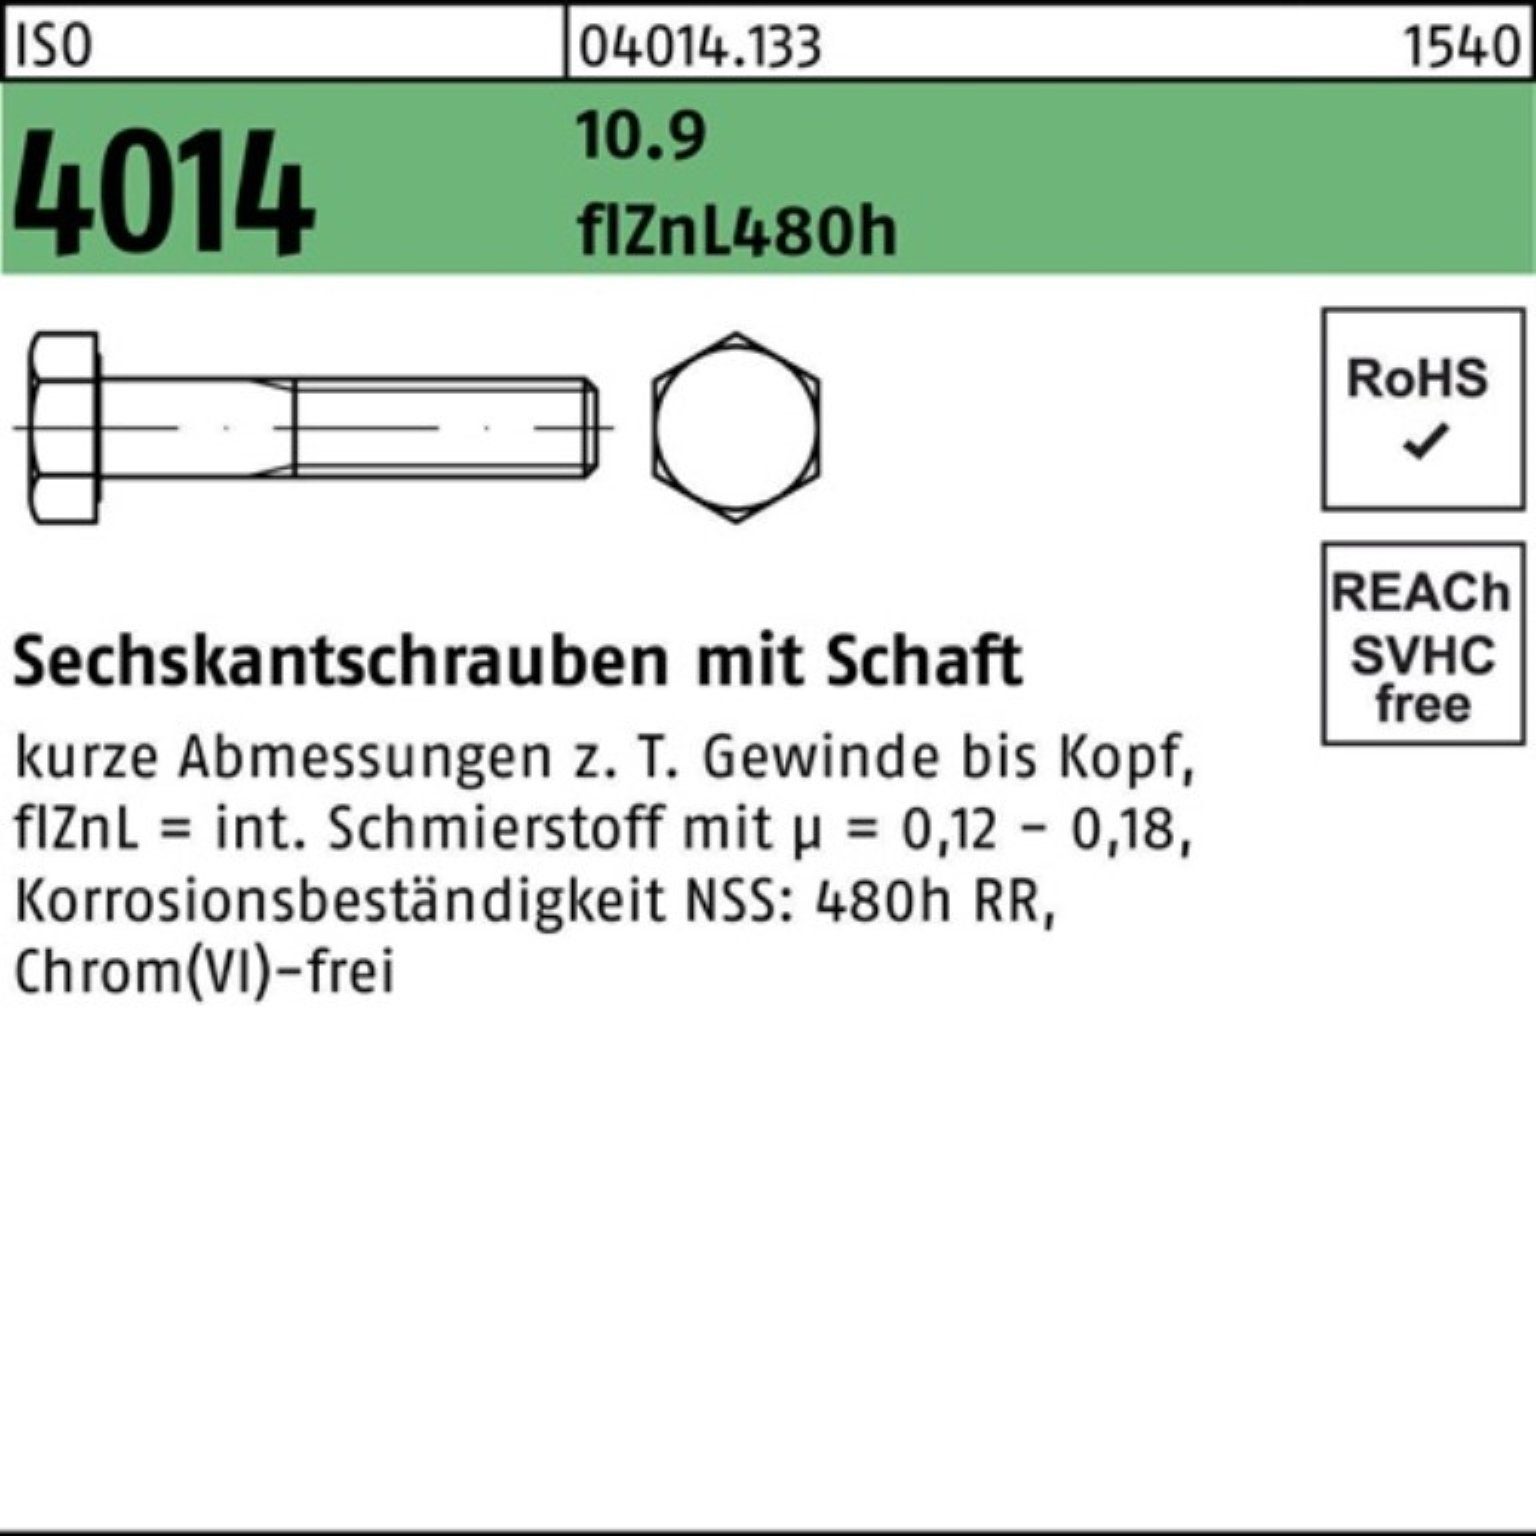 Bufab Sechskantschraube 200er Pack 4014 M8x zinklamellenb Schaft 10.9 ISO 65 Sechskantschraube